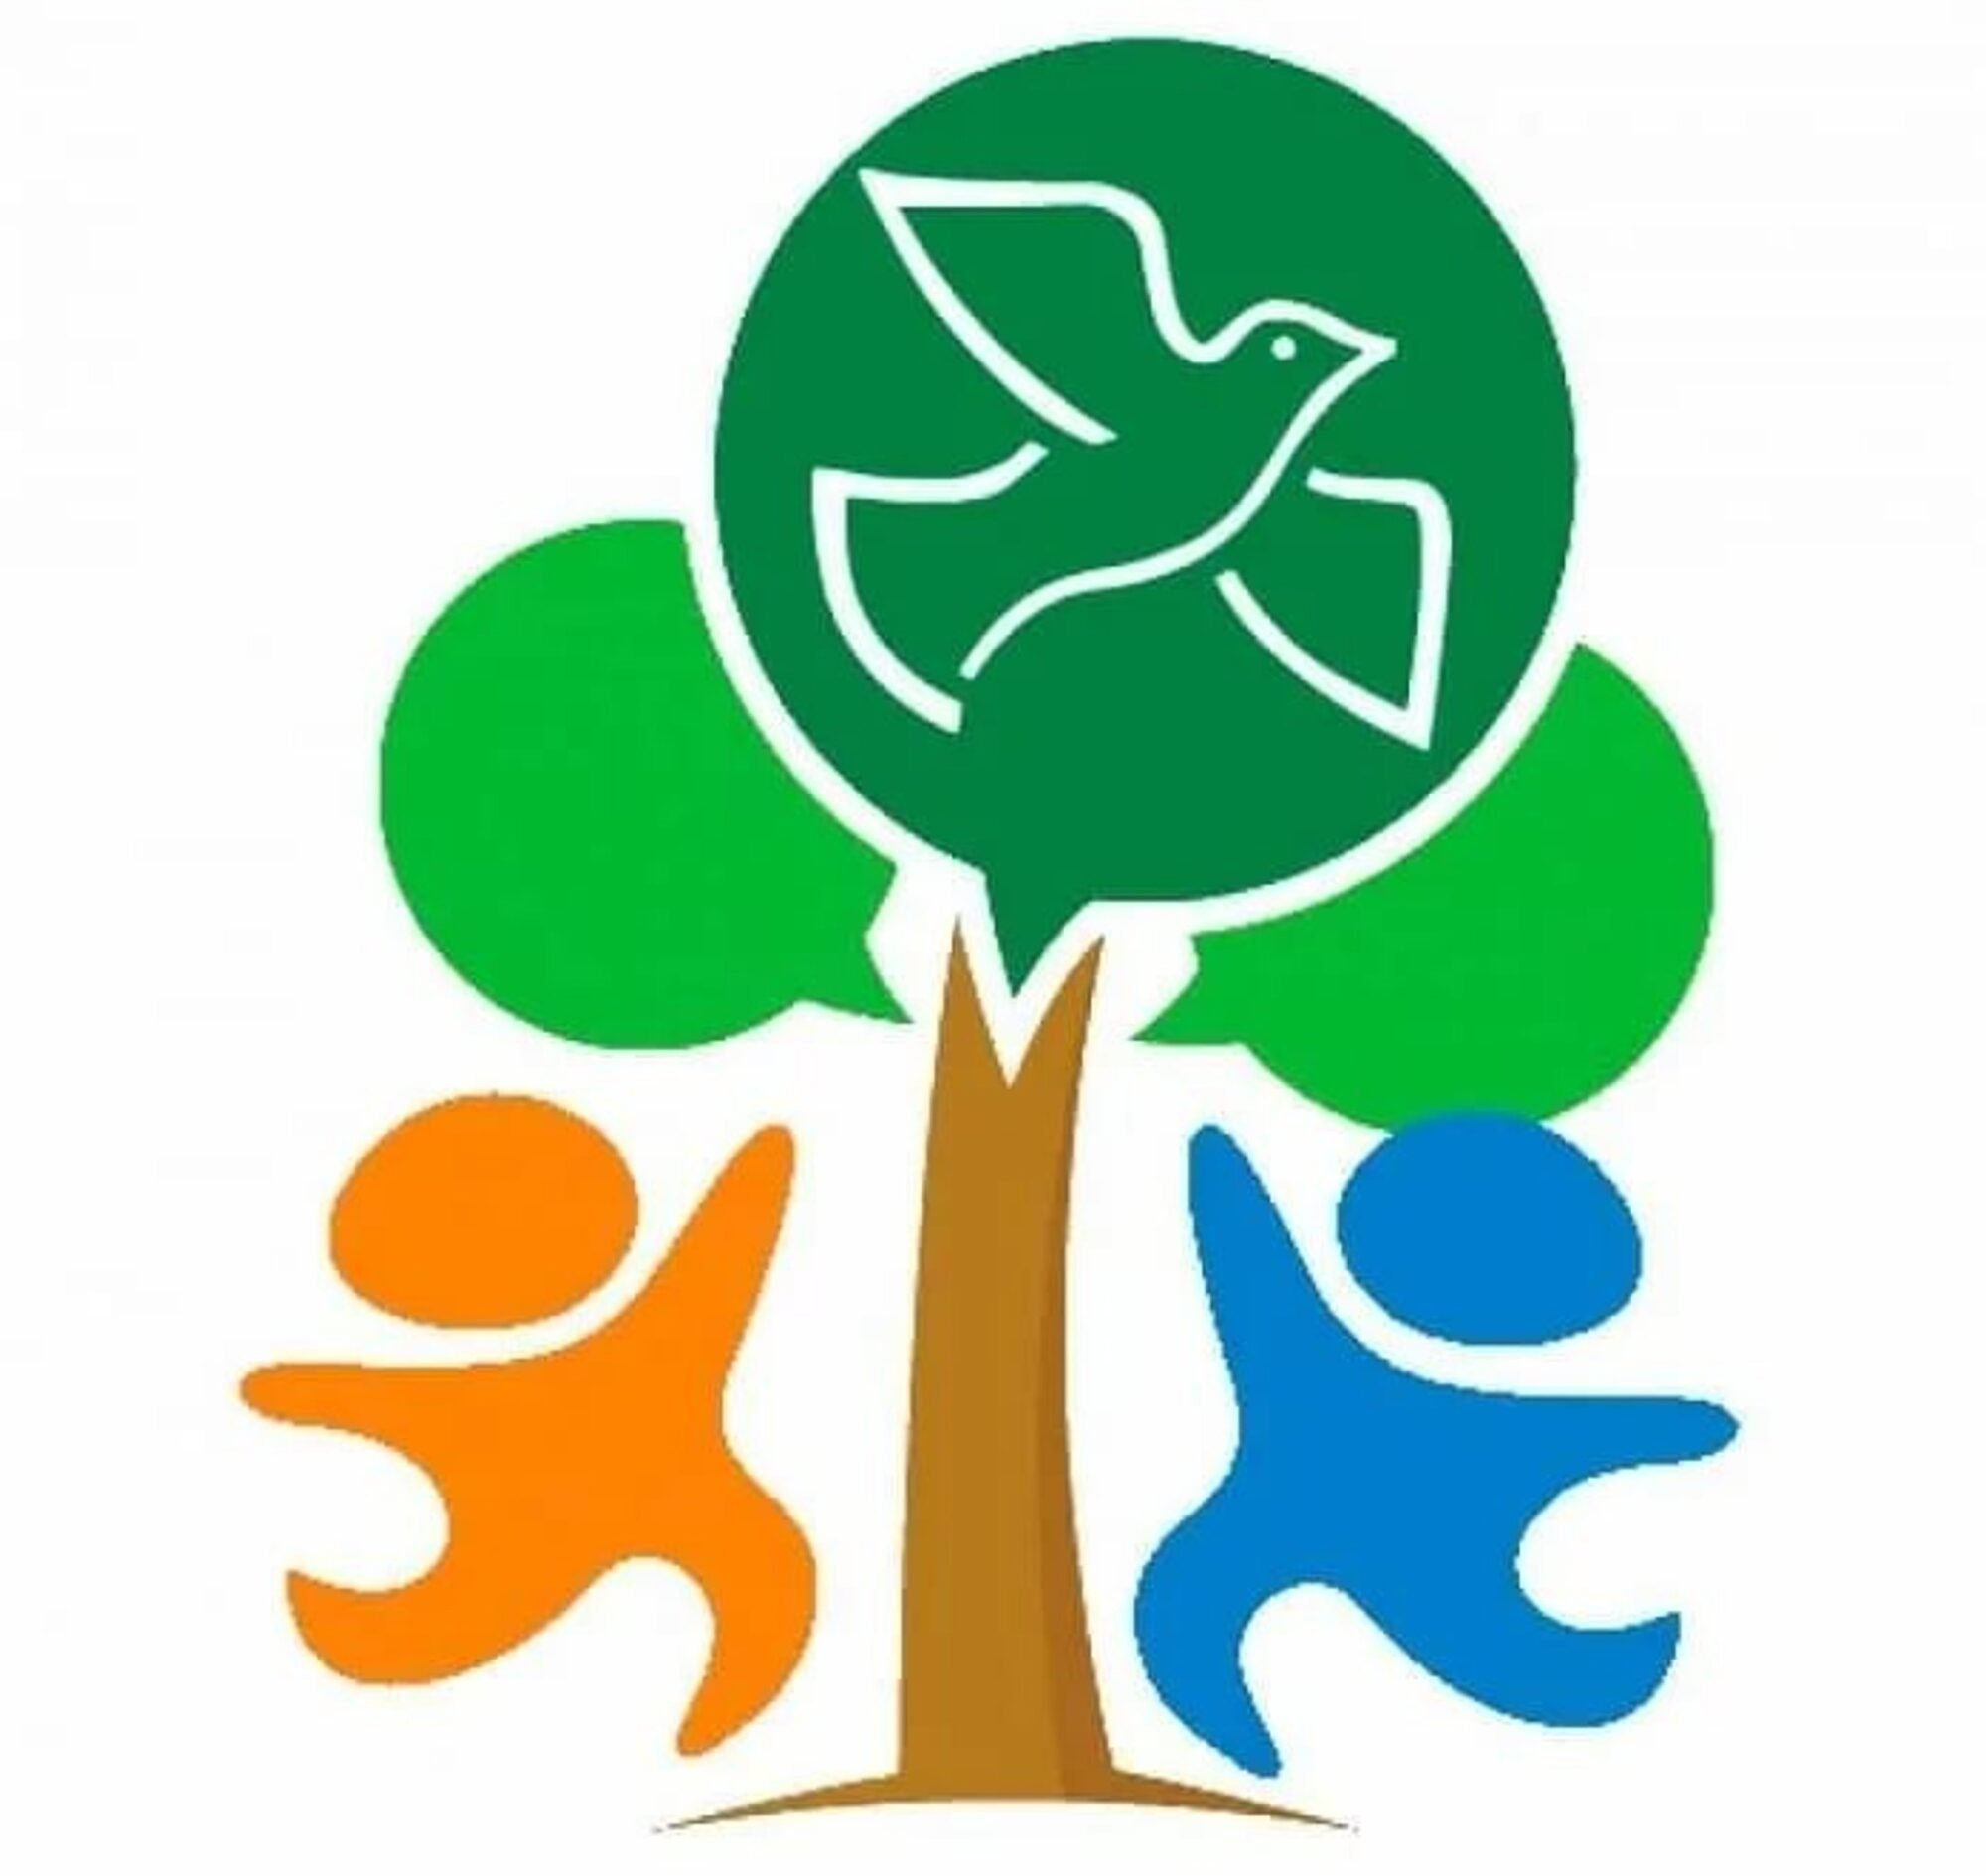 Юный любитель природы. Эмблема экологии. Экологические эмблемы для детей. Экология символ детский. Логотип природа и экология.